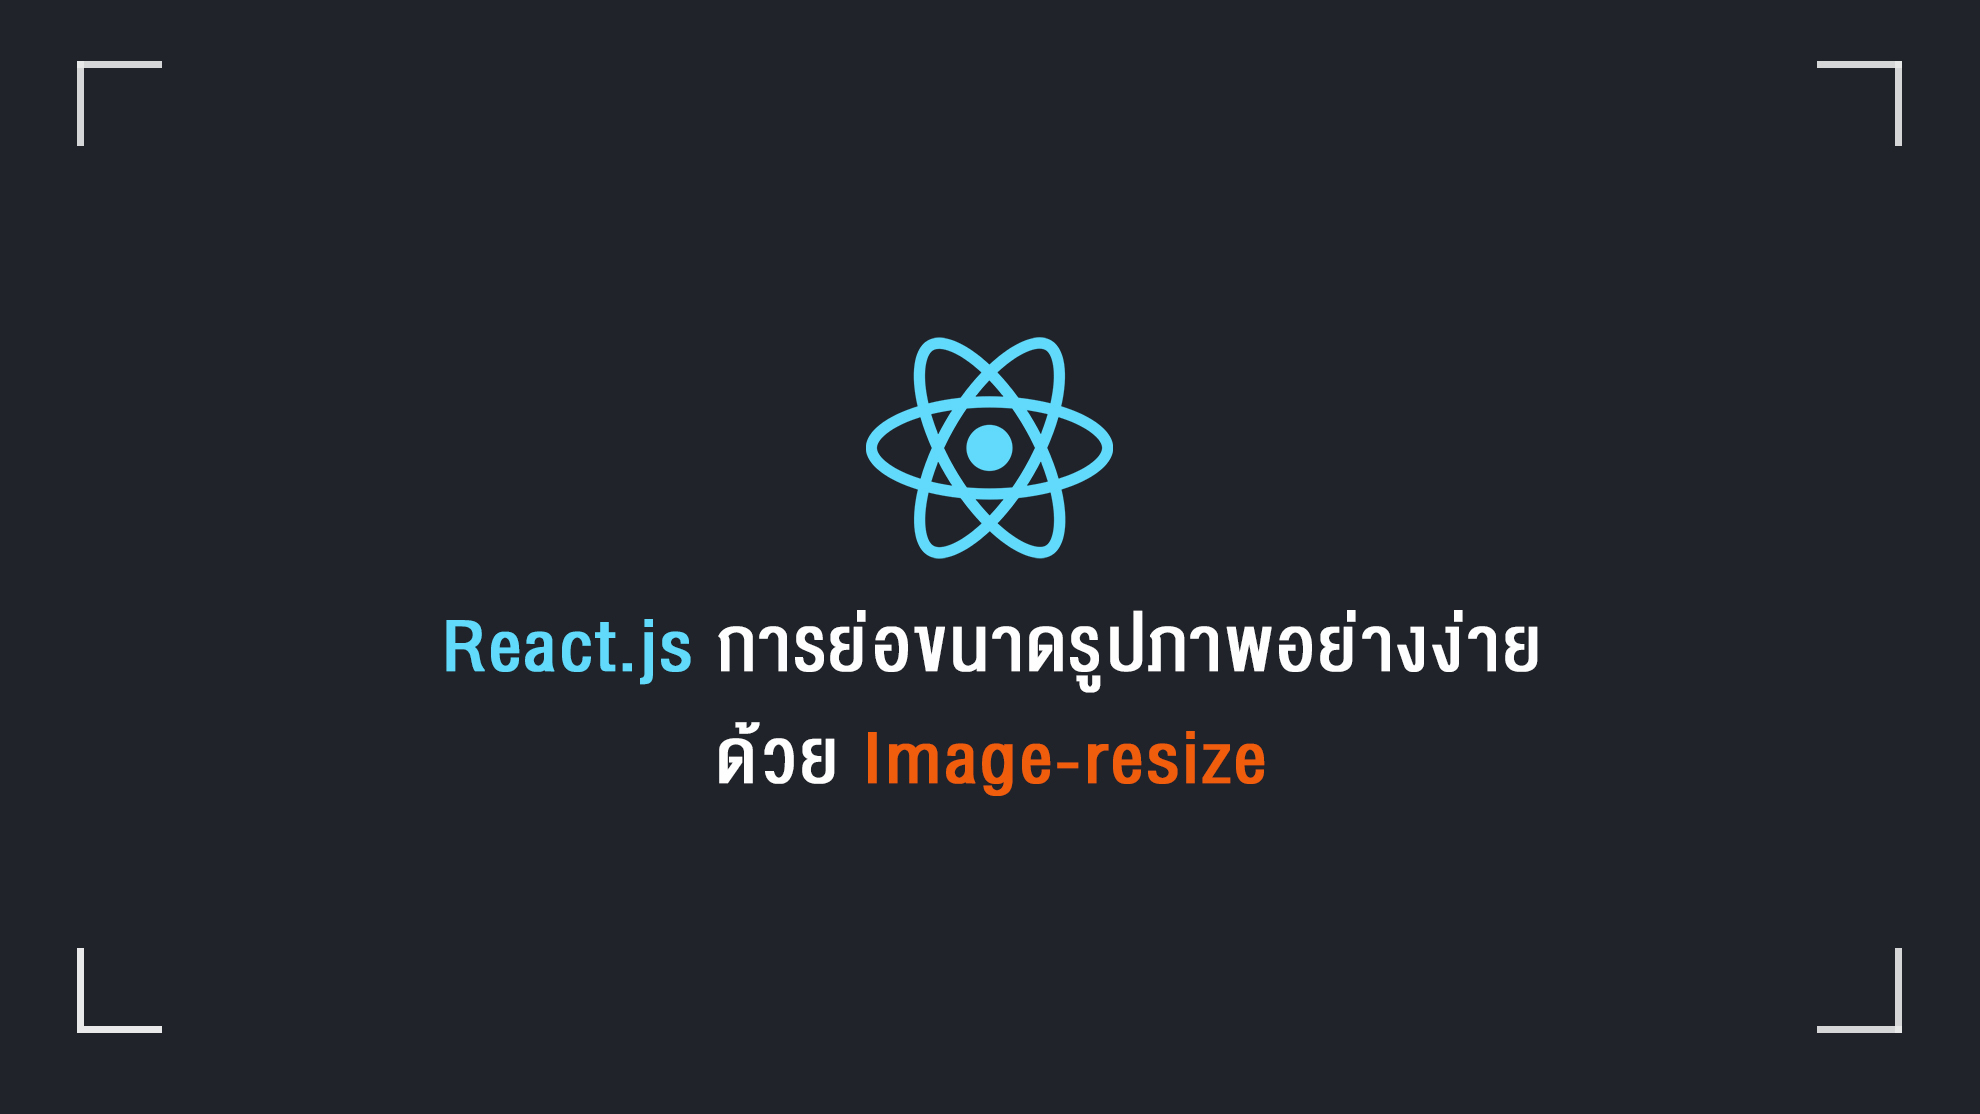 React.js : การย่อขนาดรูปภาพอย่างง่ายด้วย Image-resize